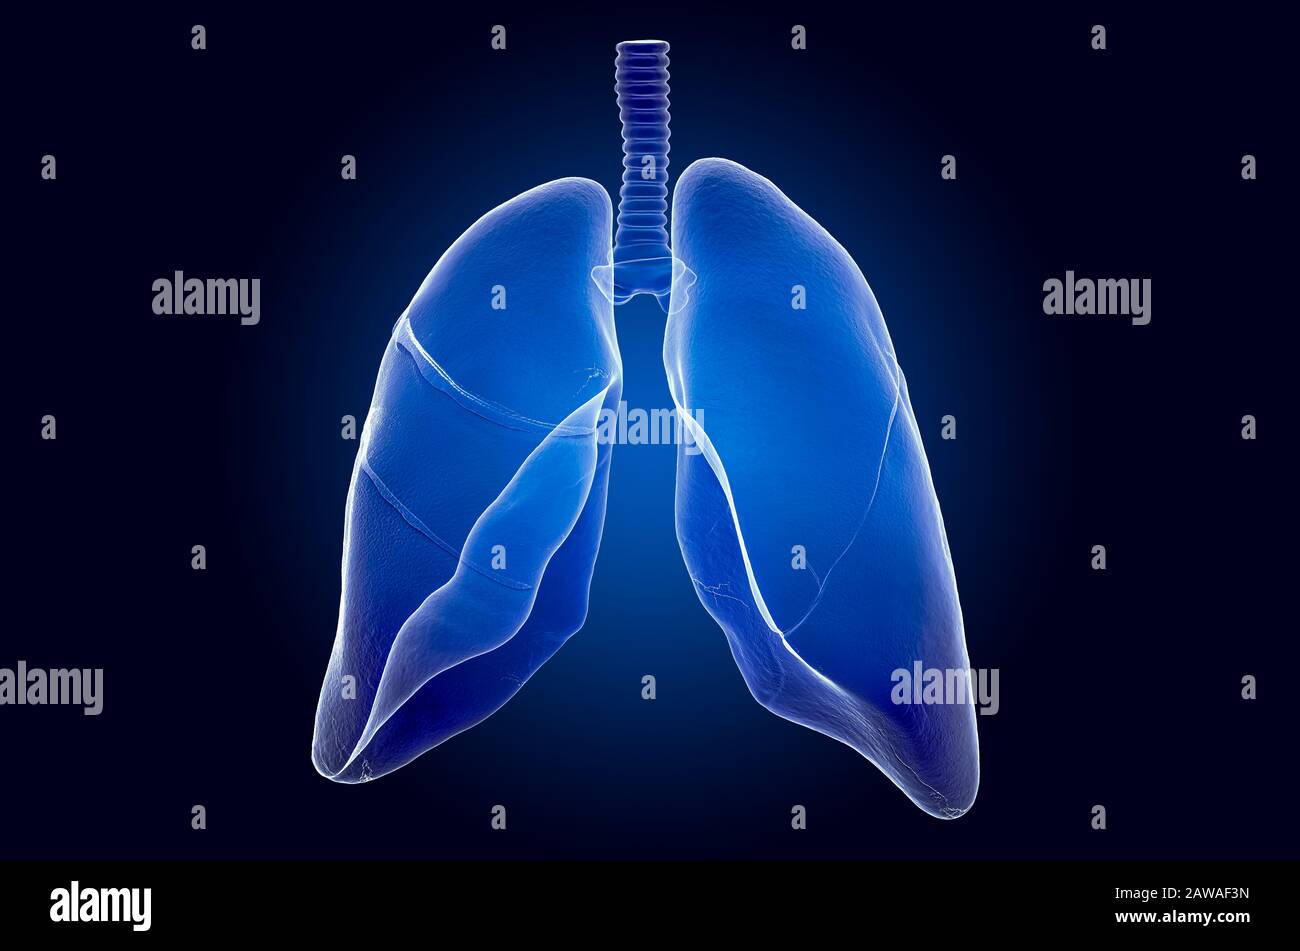 Menschliche Lunge, Röntgenhologramm. 3D-Rendering auf dunkelblauem Hintergrund Stockfoto